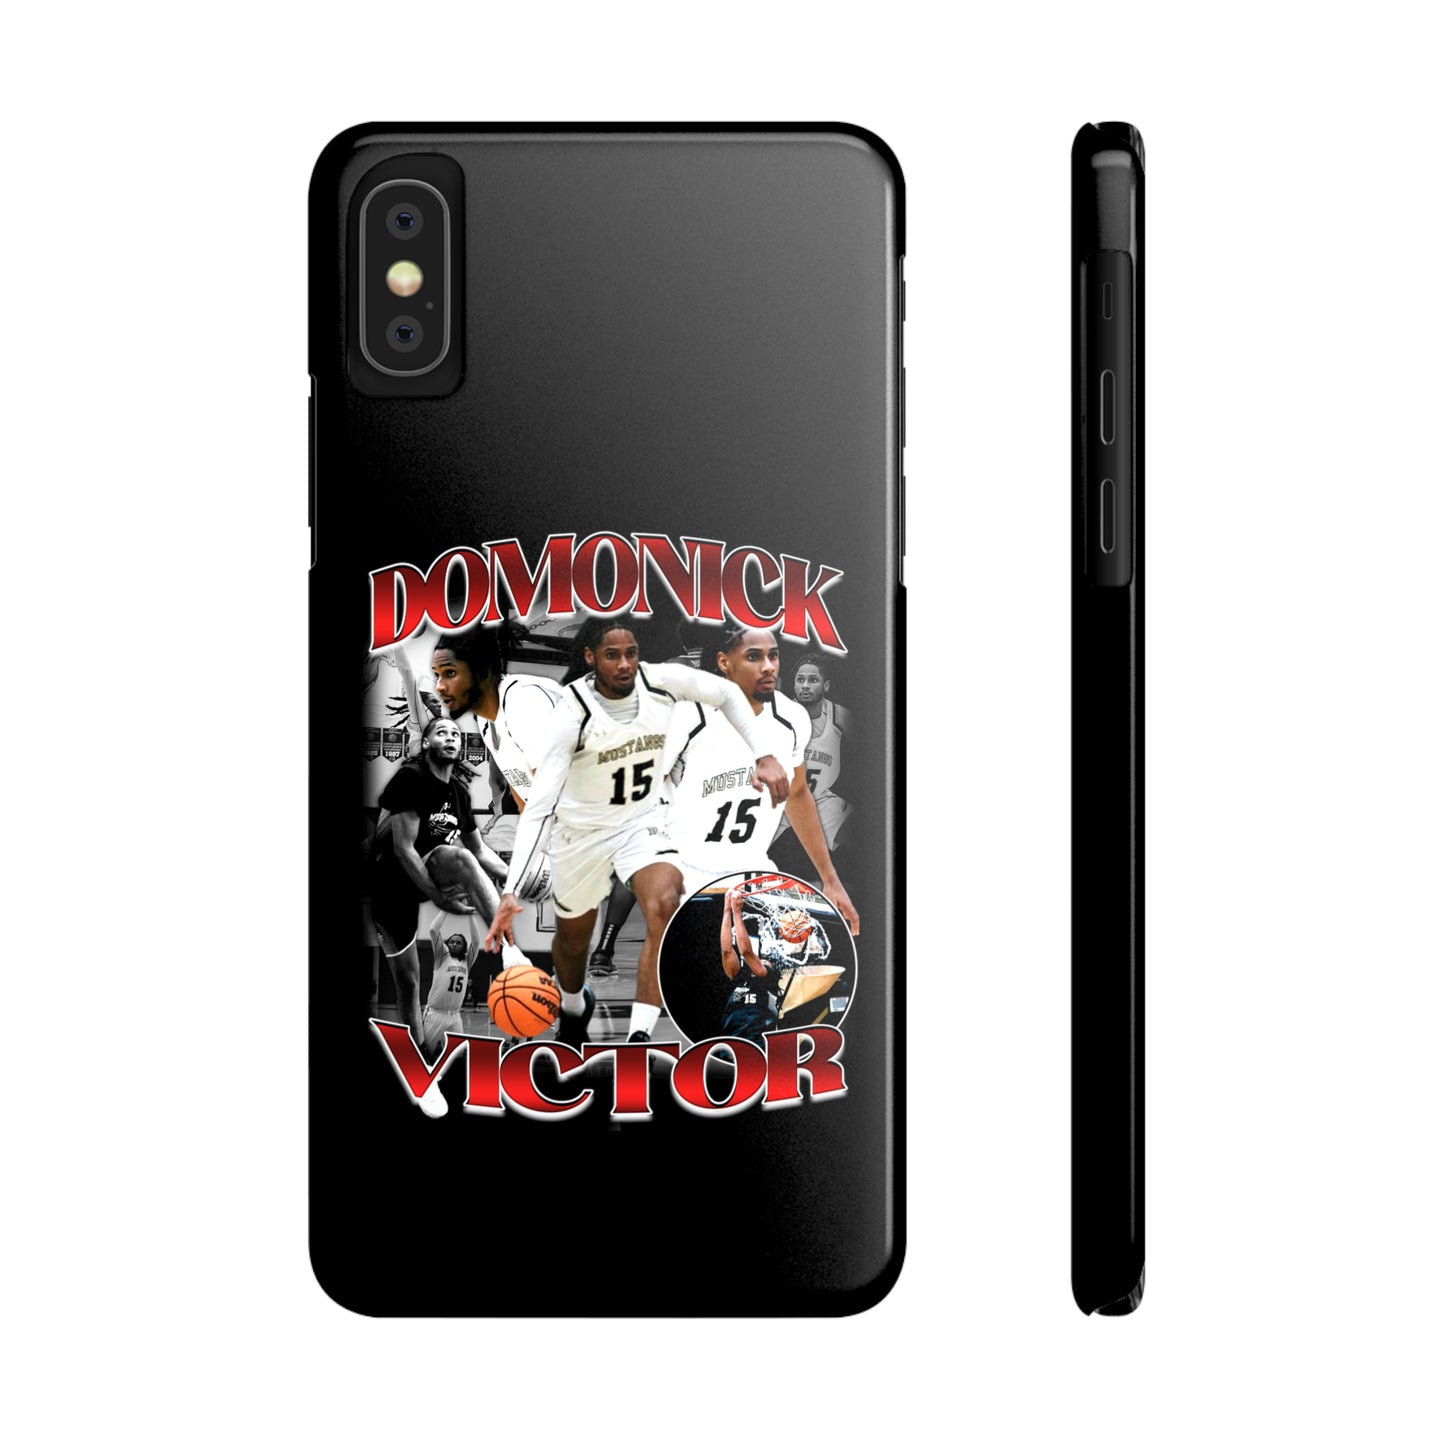 Domonick Victor Phone Case